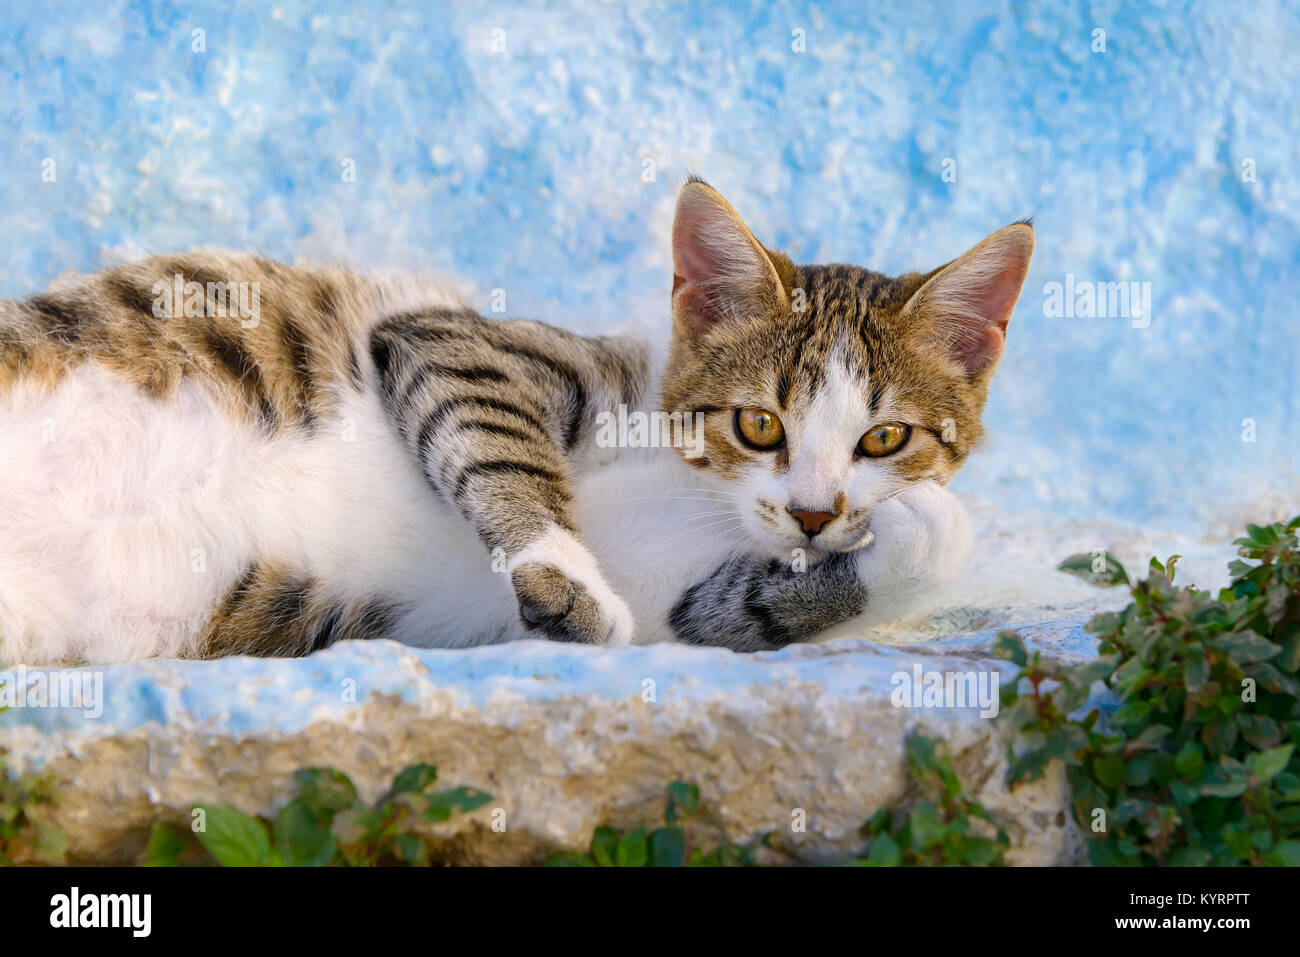 Un carino gattino, sgombro brown tabby con bianco, lazy di appoggio su un blu bianco parete, isola greca di Rodi, DODECANNESO Grecia, Europa Foto Stock